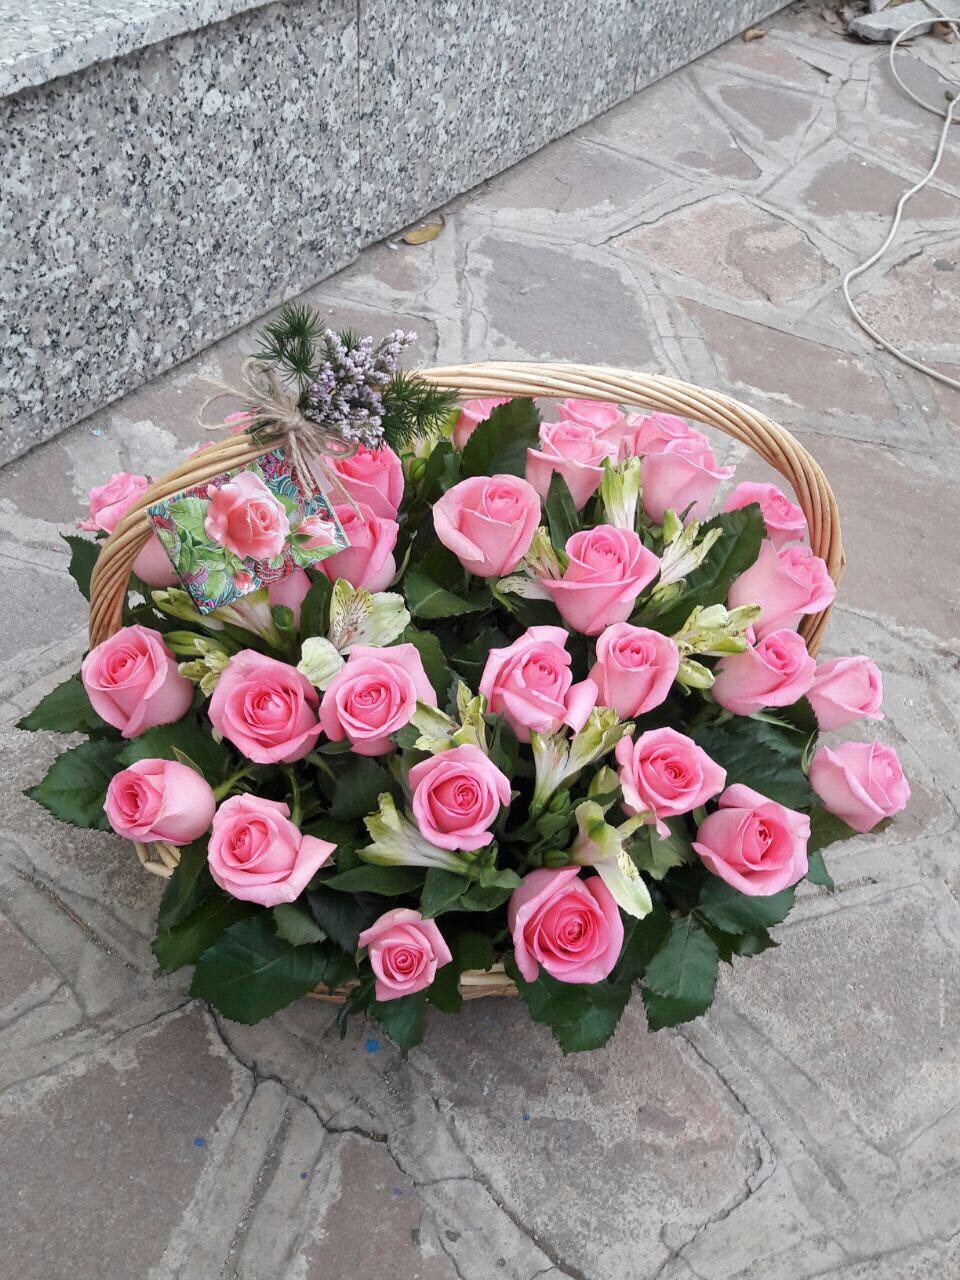 Композиция из 31 розовой розы с альстромериями в корзине